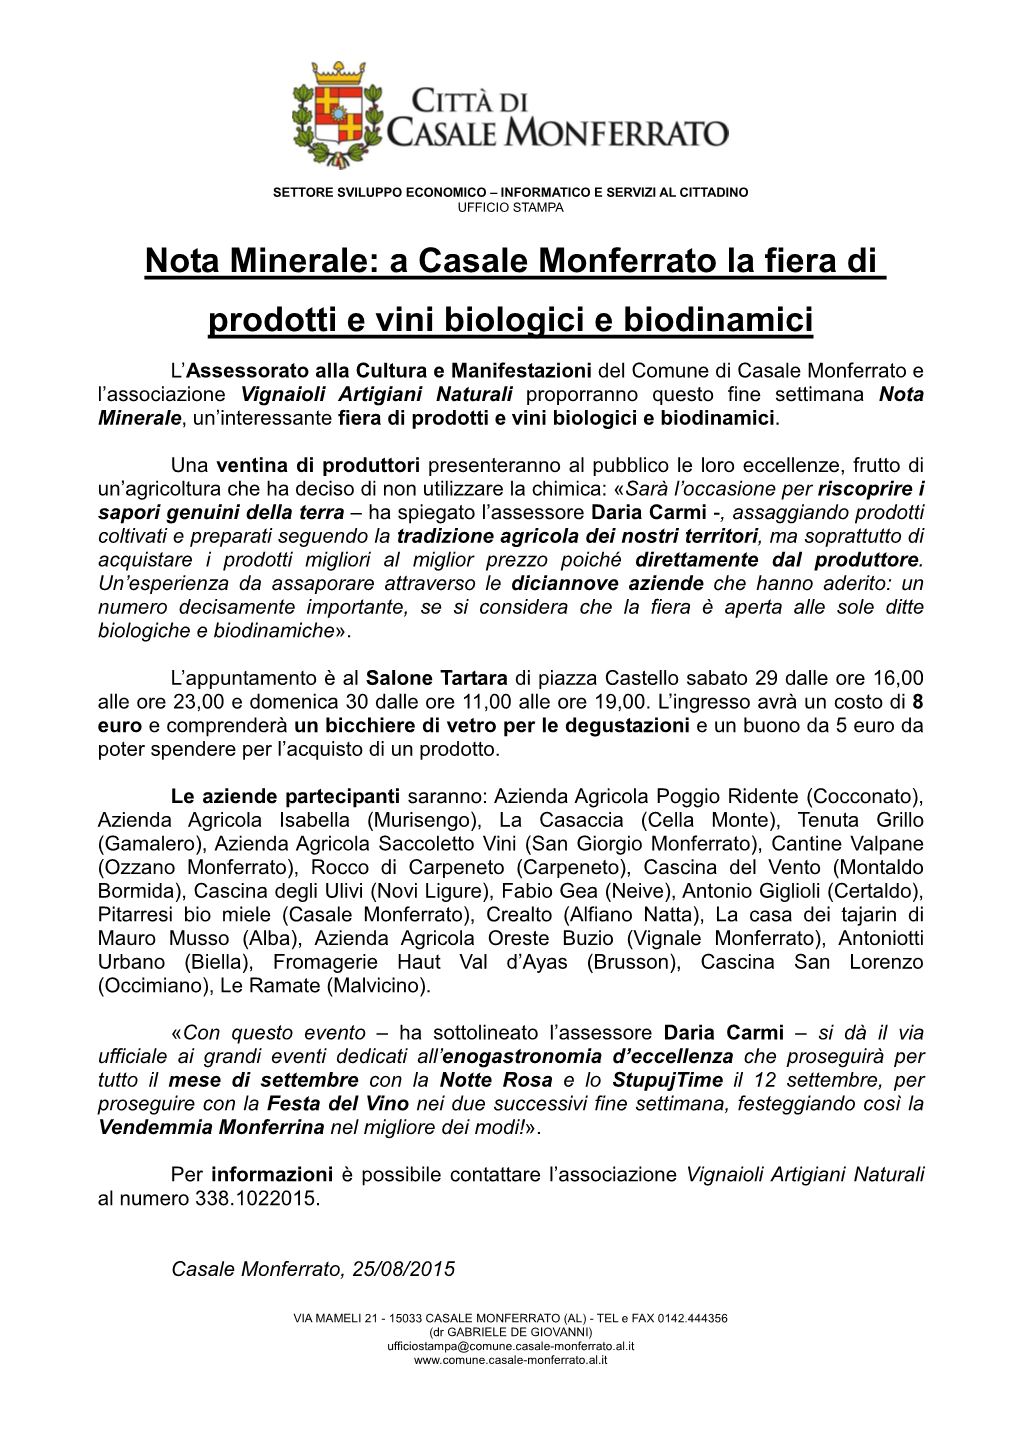 Nota Minerale: a Casale Monferrato La Fiera Di Prodotti E Vini Biologici E Biodinamici